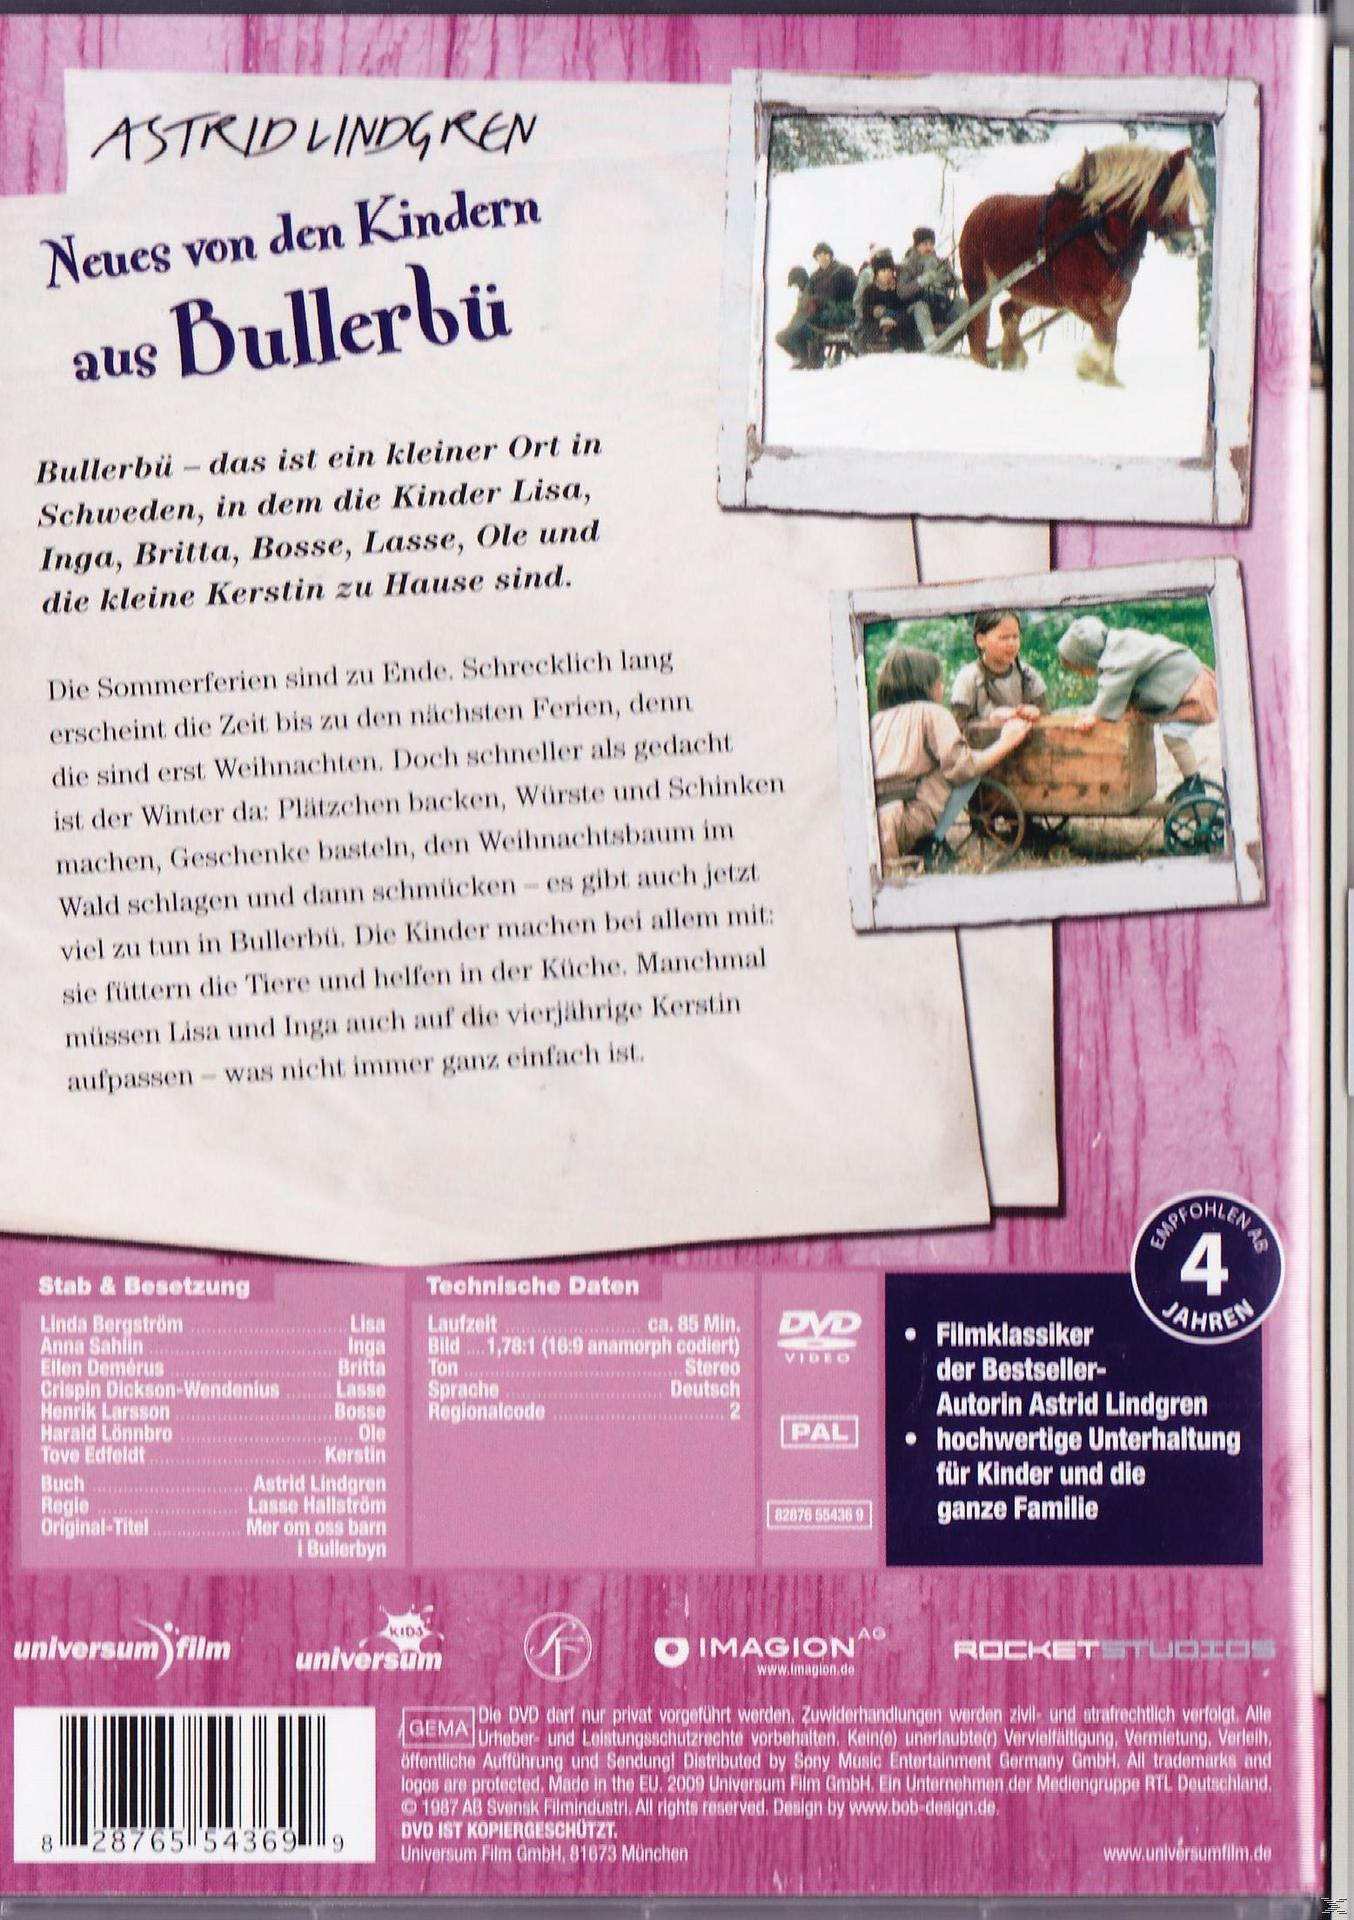 DVD aus von den Büllerbü Kindern Neues